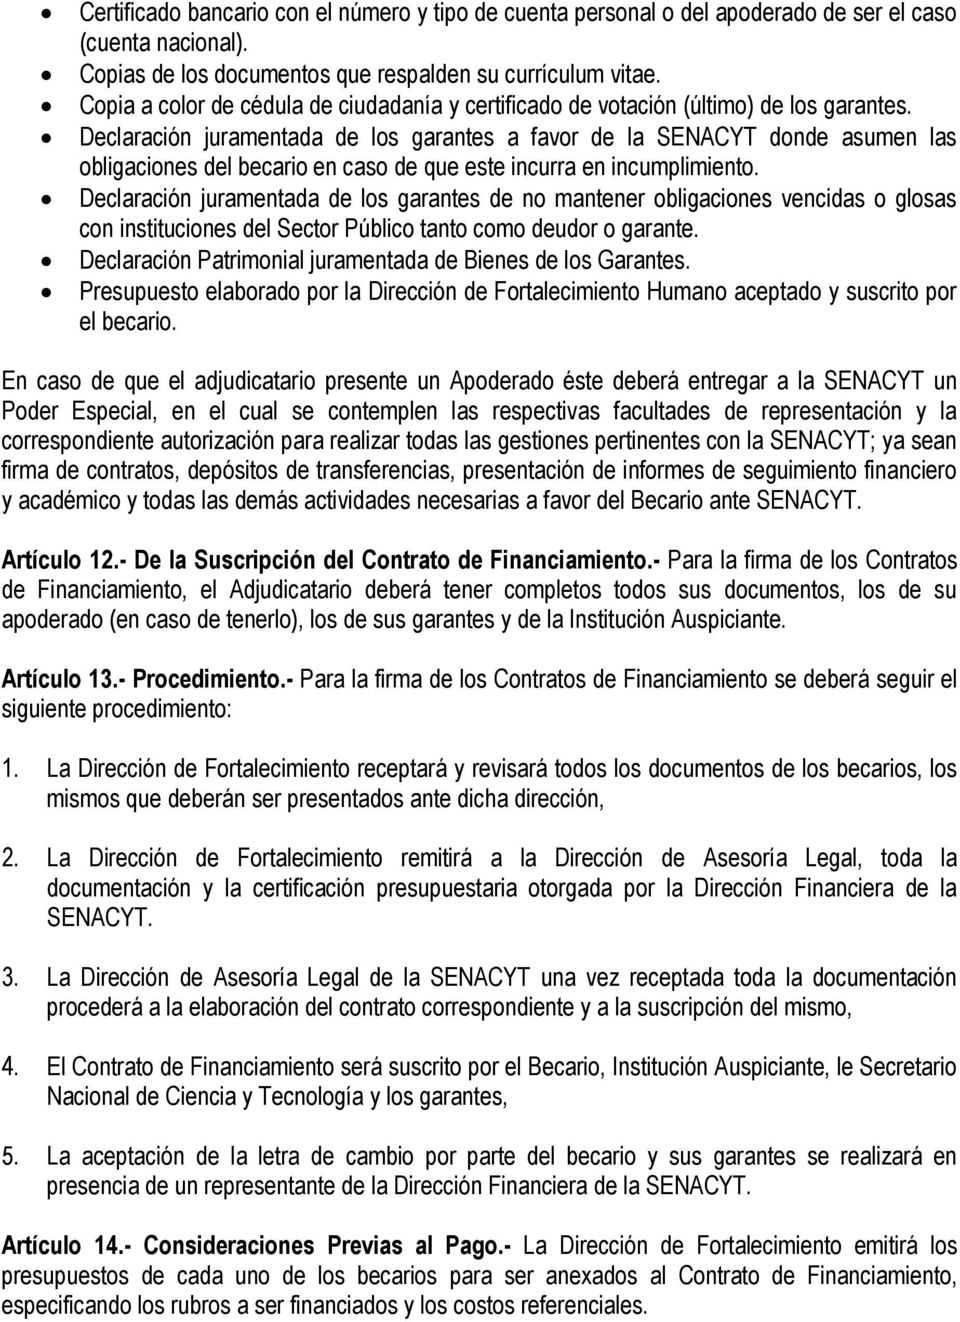 Declaración juramentada de los garantes a favor de la SENACYT donde asumen las obligaciones del becario en caso de que este incurra en incumplimiento.